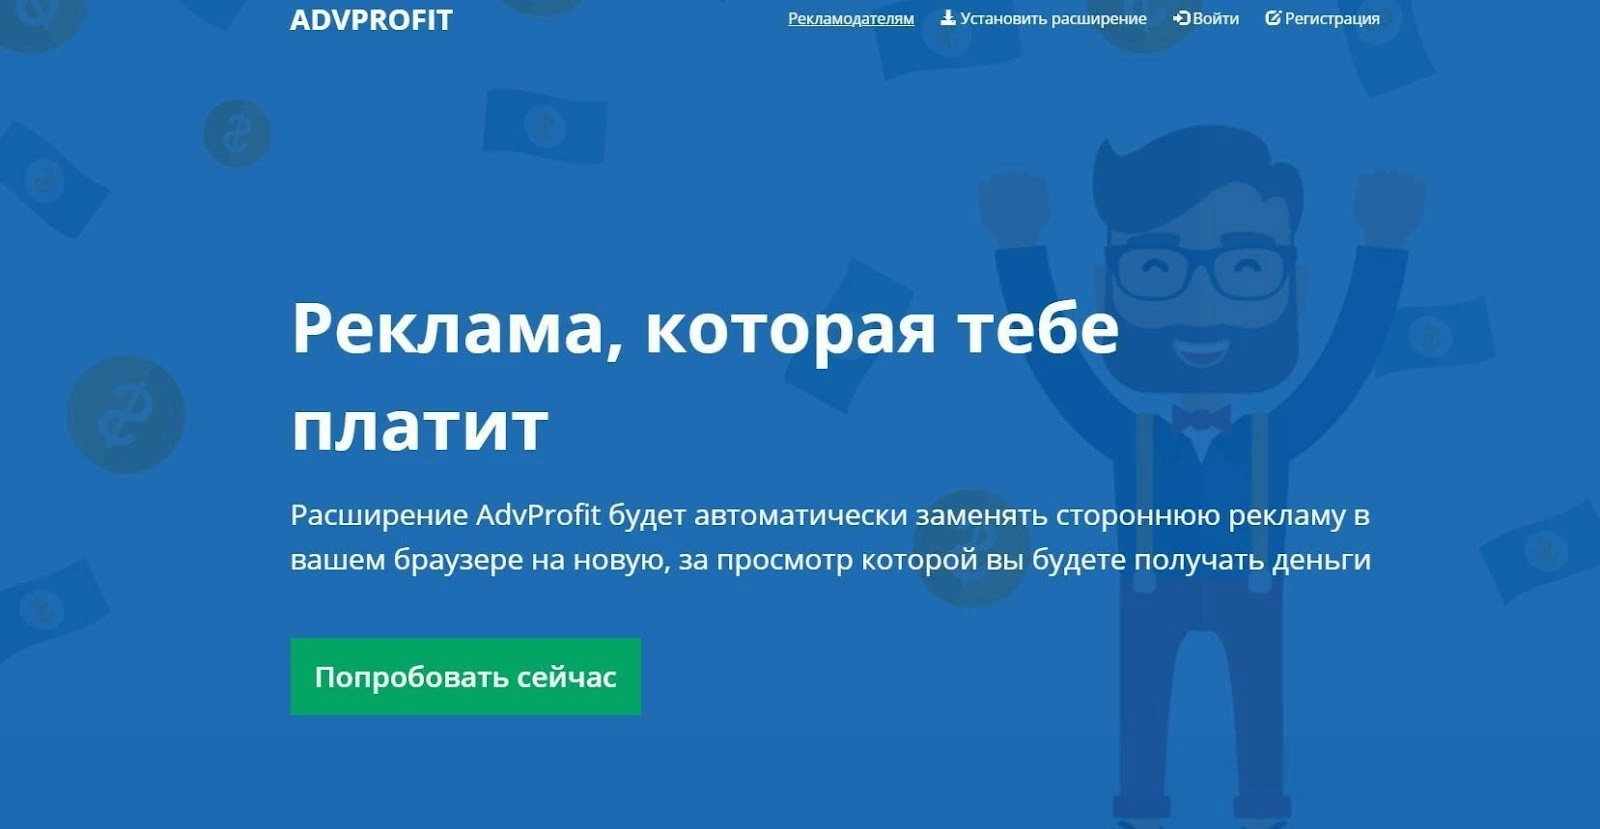 Advprofit.ru - лидер среди расширений для заработка 